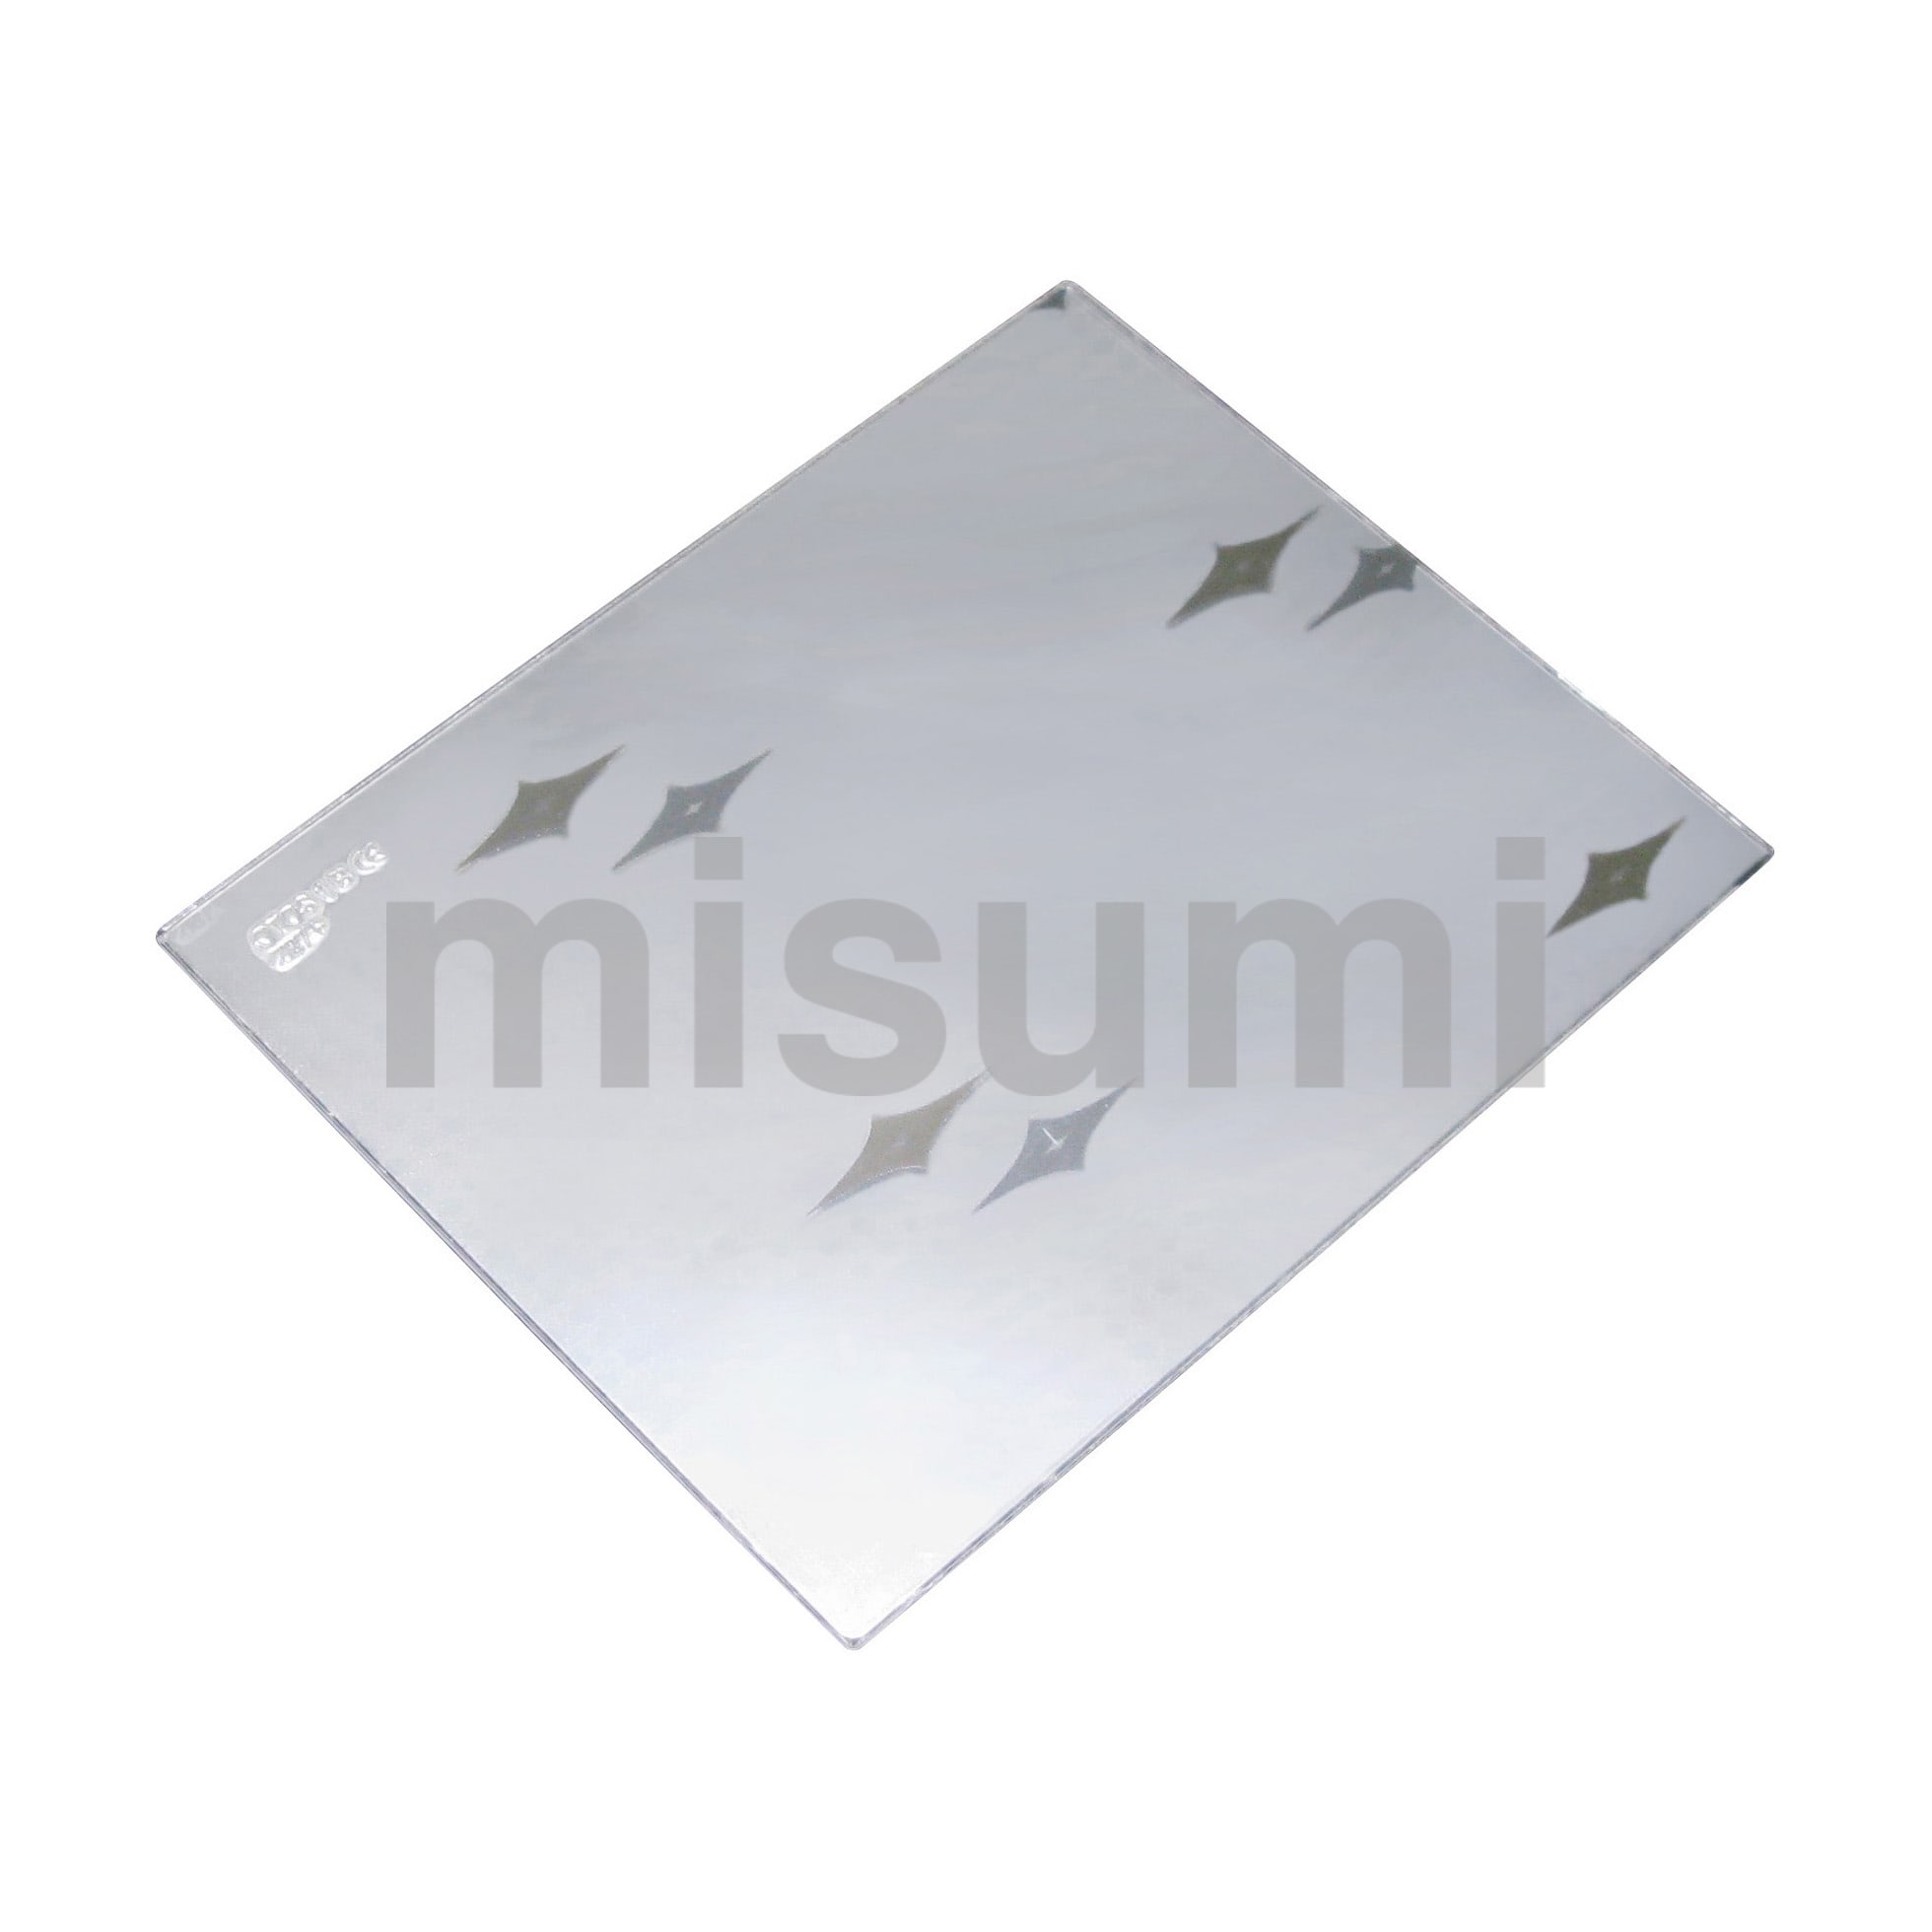 溶接面 カバープレートセット（外側10枚入り） マイト工業 MISUMI(ミスミ)